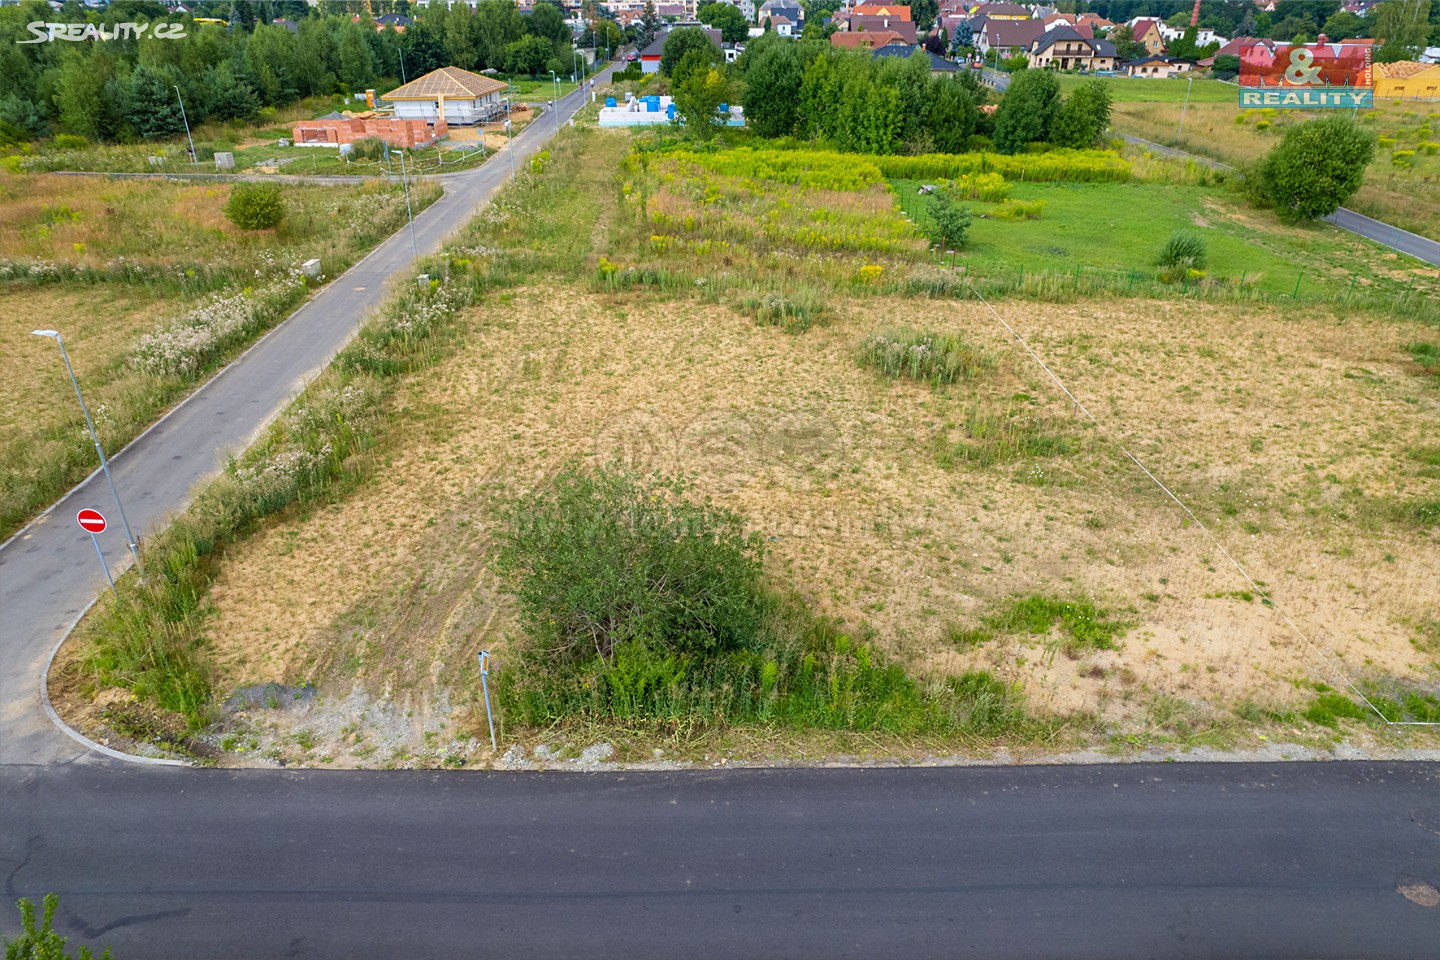 Prodej  stavebního pozemku 982 m², Doksy, okres Česká Lípa